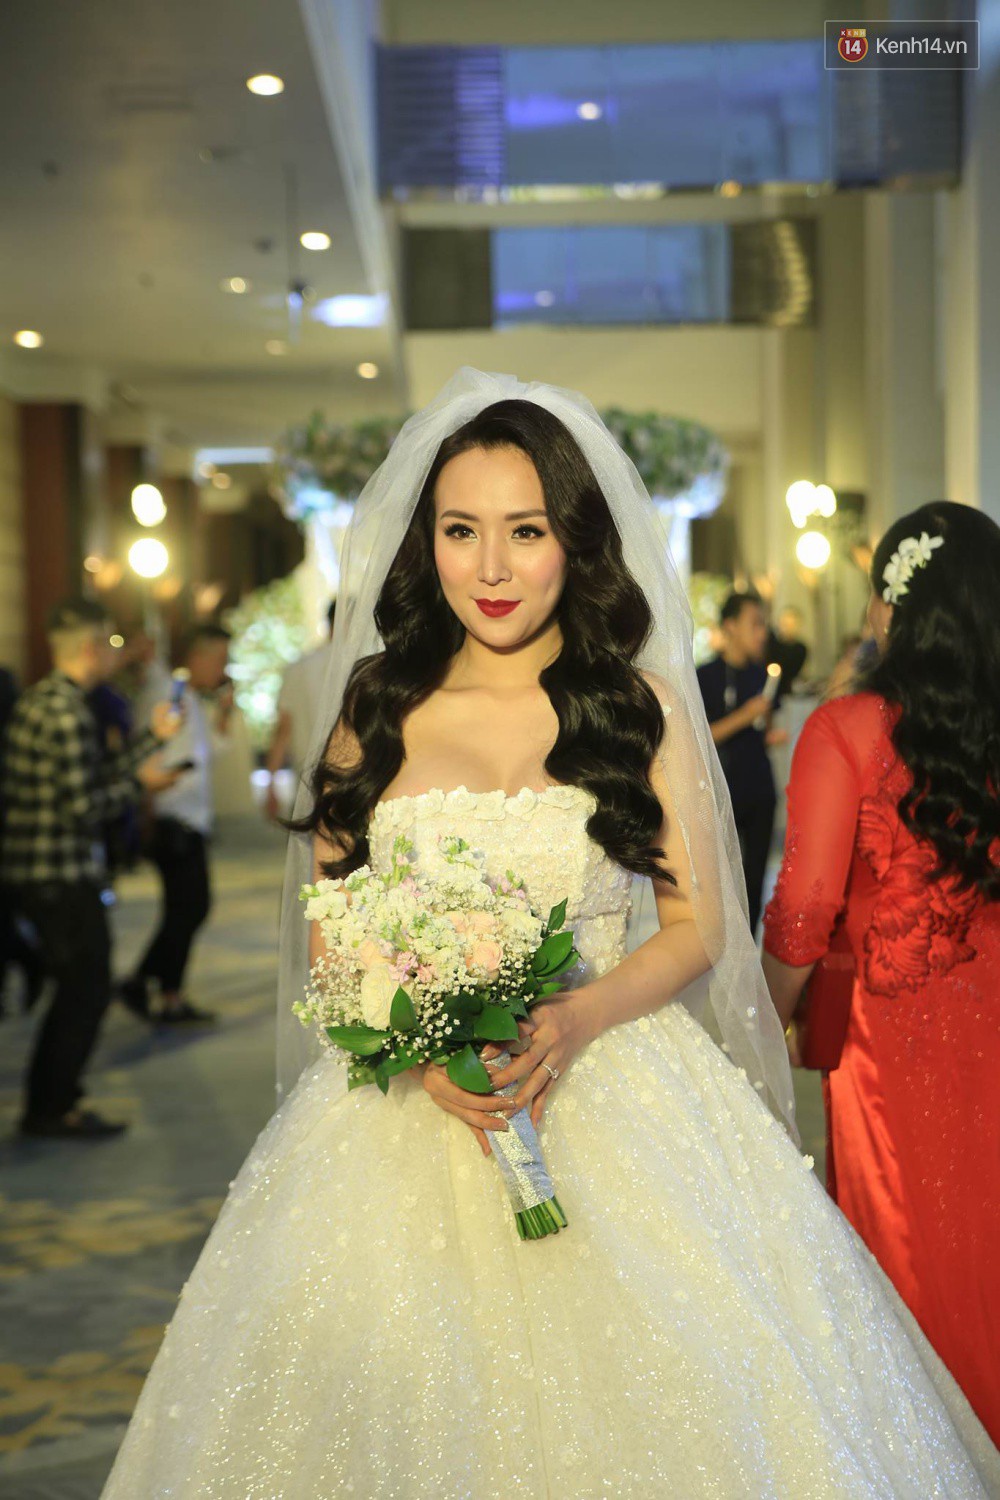 Cập nhật: Khắc Việt rạng rỡ sánh đôi bên cô dâu xinh đẹp trong tiệc cưới tại Hà Nội - Ảnh 3.